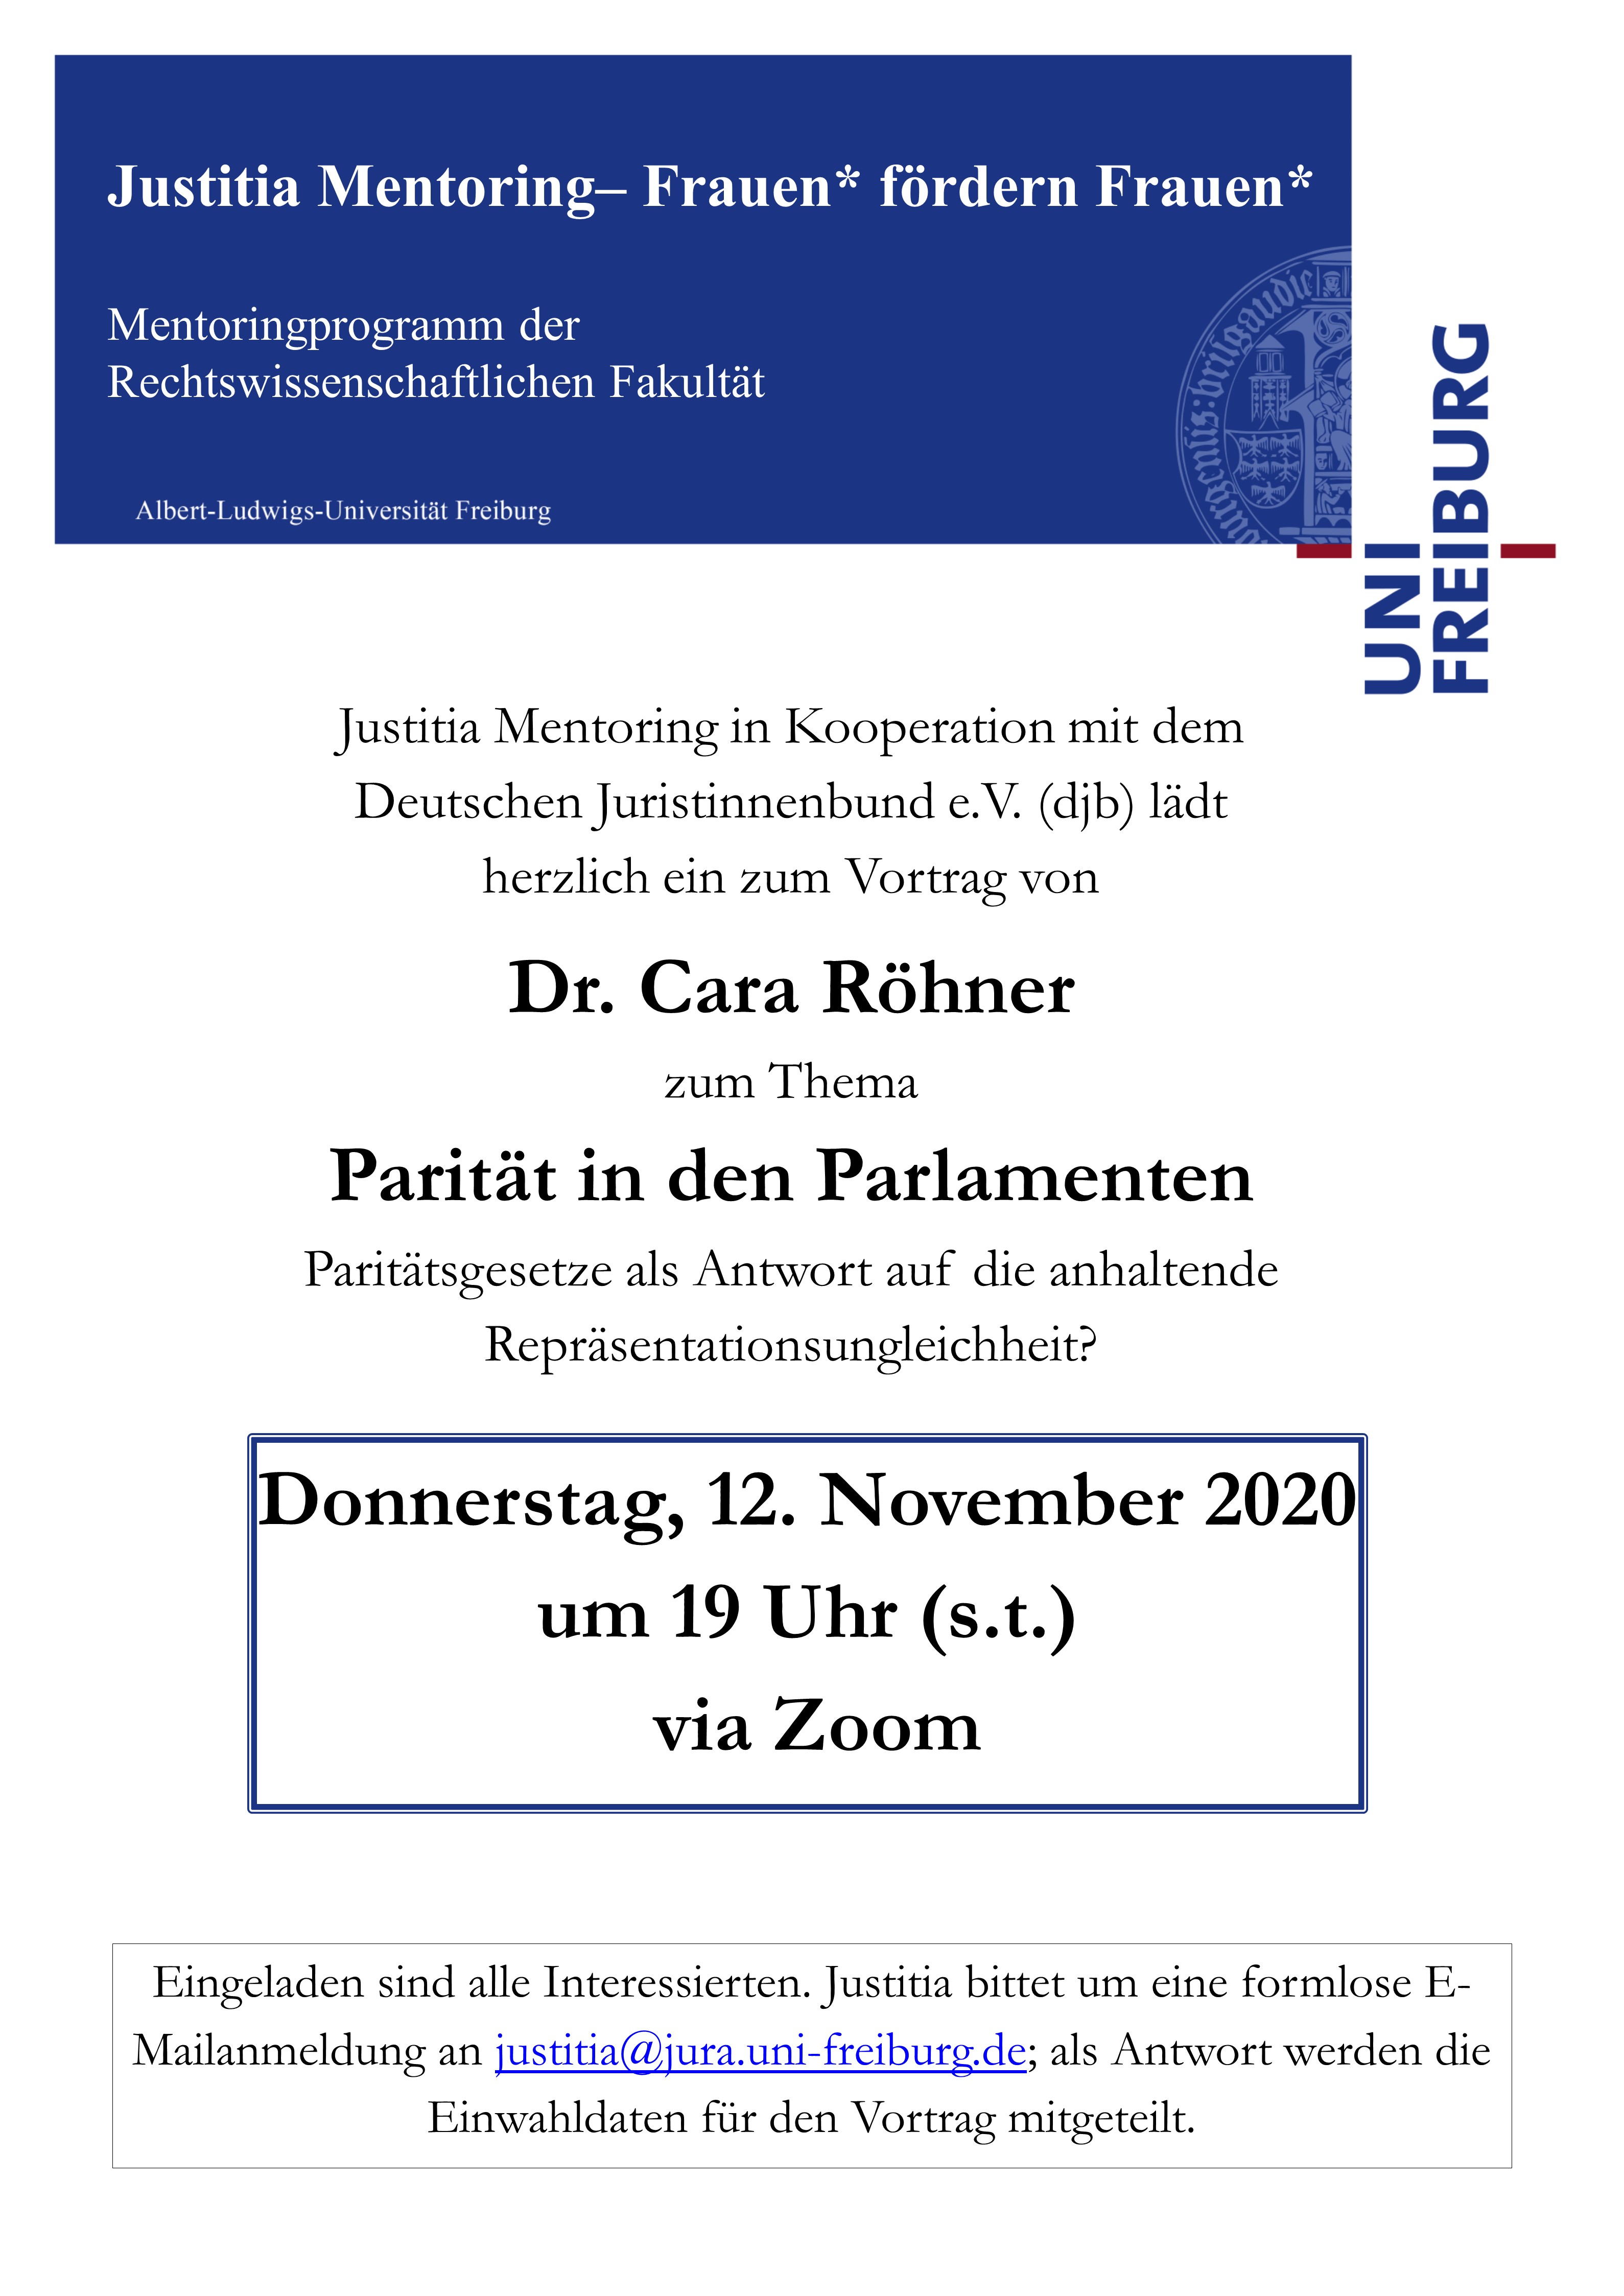 Justitia Mentoring: Online-Vortrag und Diskussion mit Dr. Cara Röhner - Parität in den Parlamenten